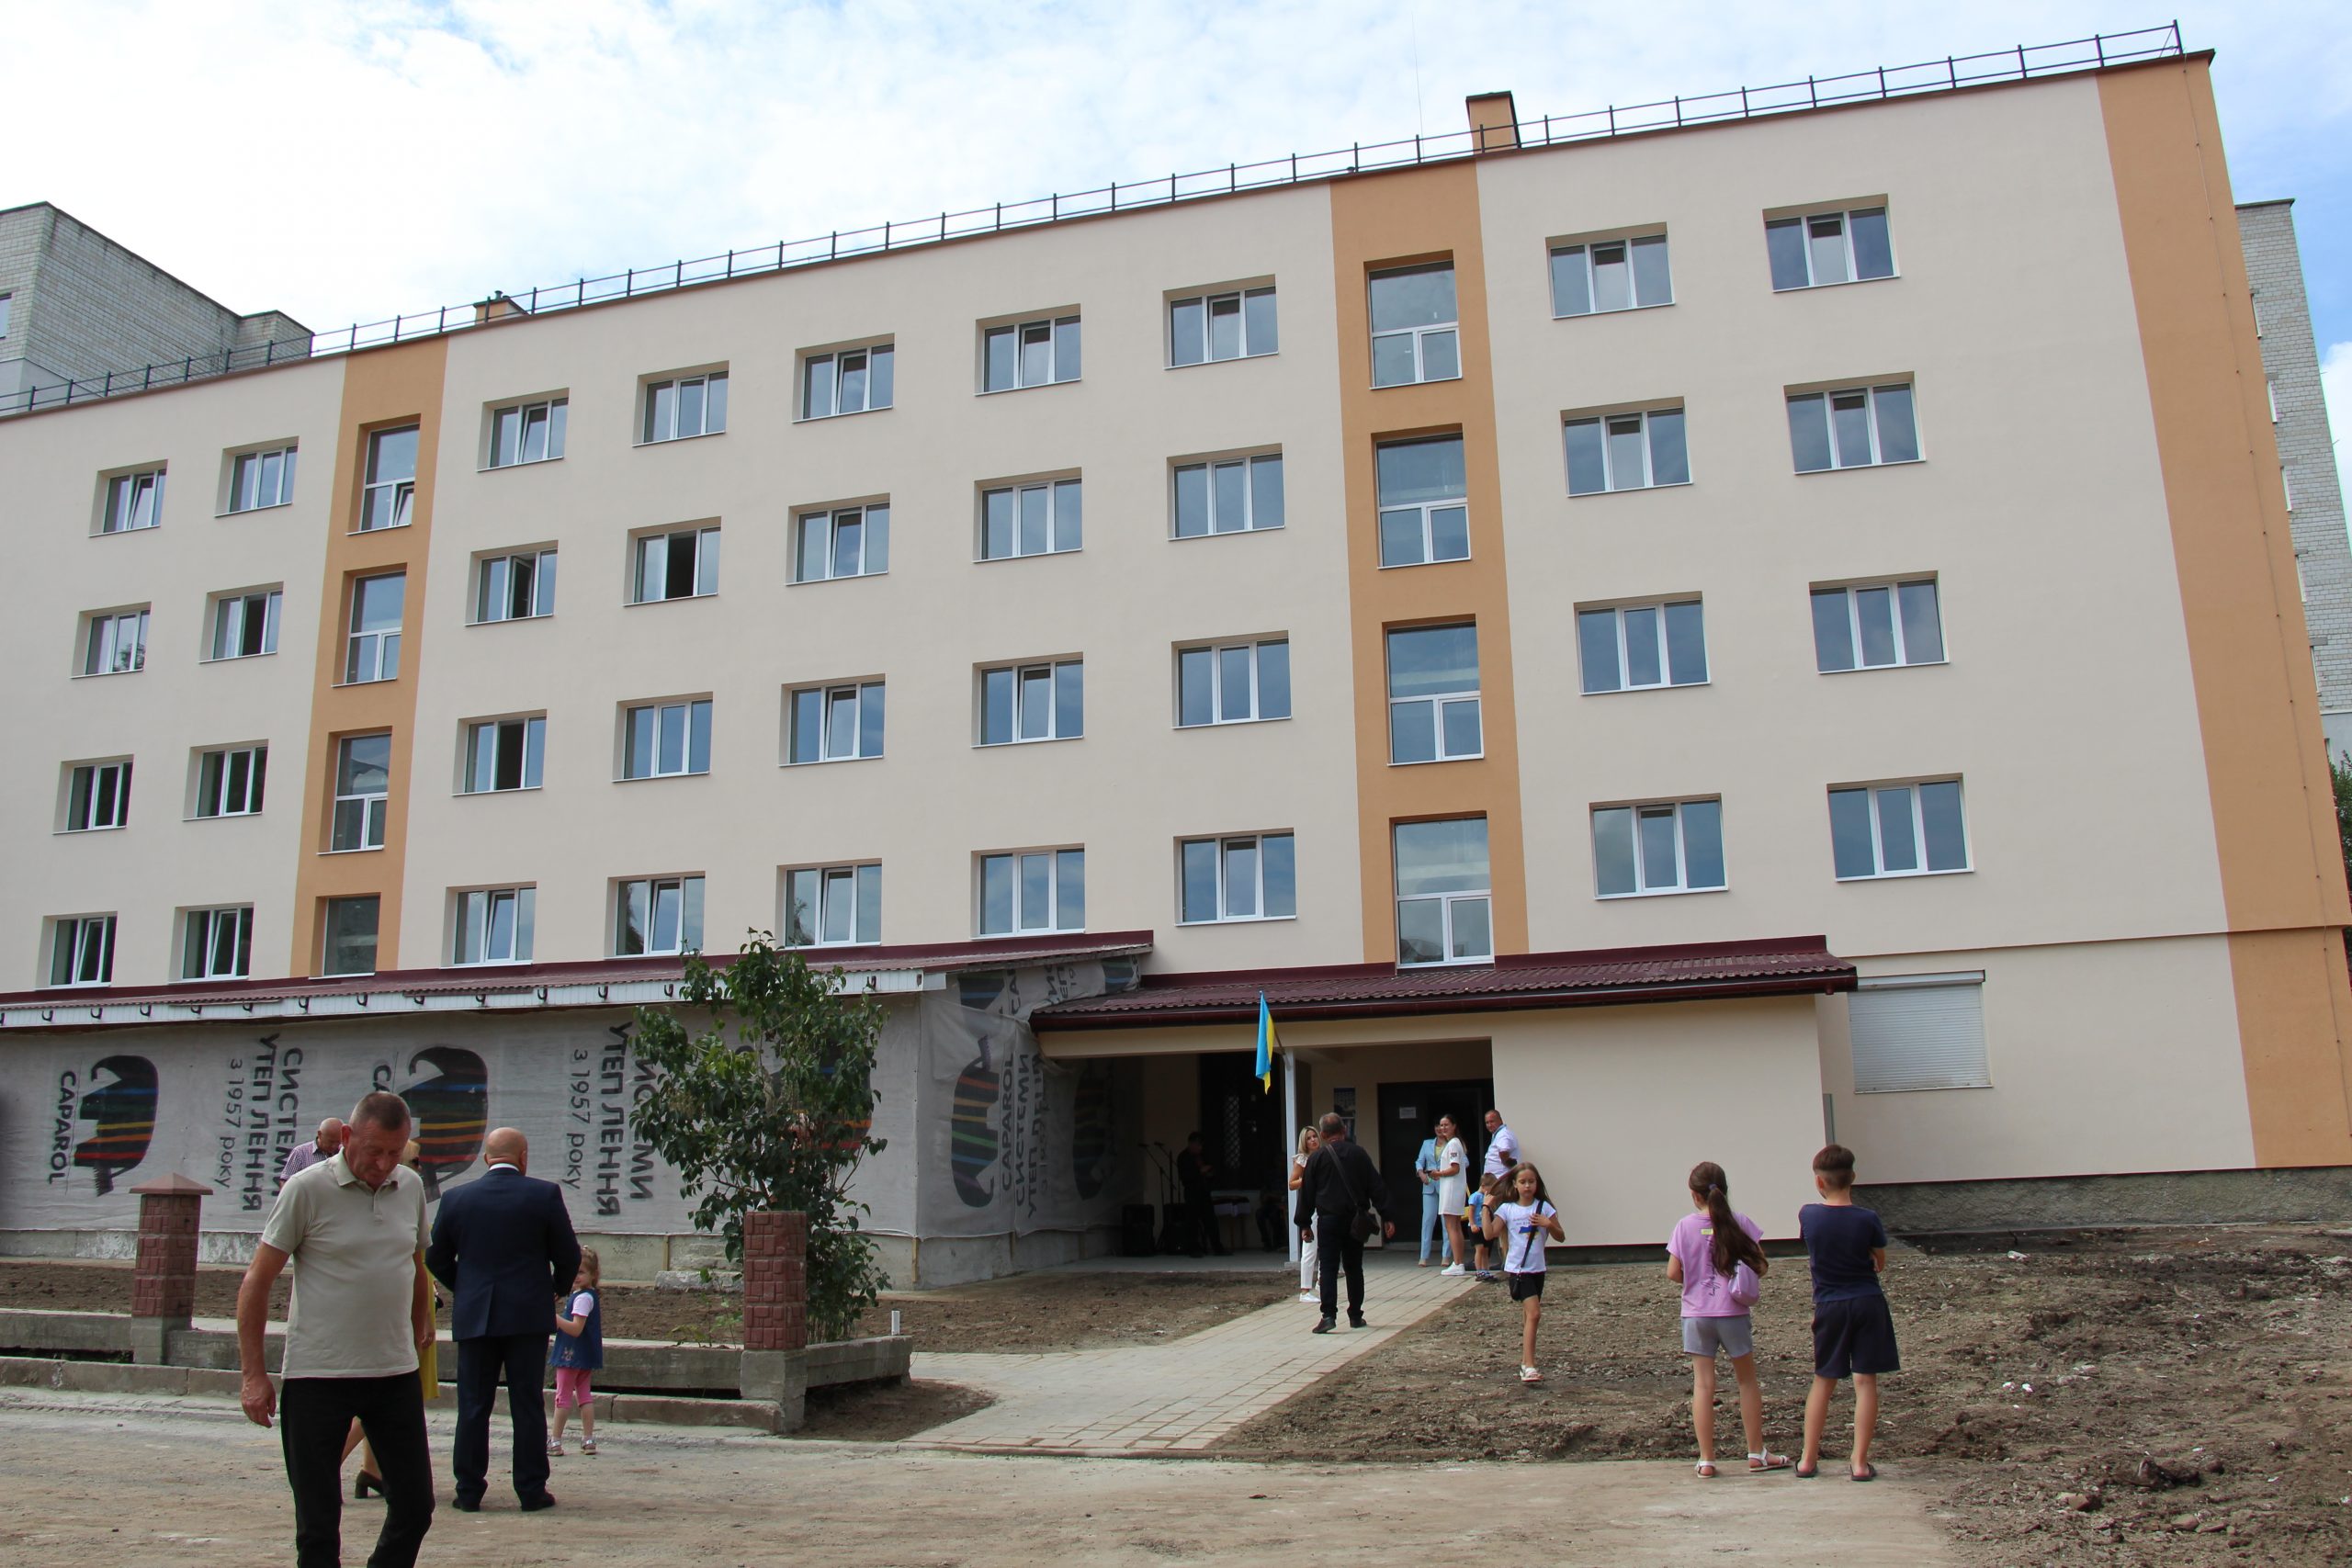 Затверджено попередній список ВПО, які отримують перше тимчасове житло у Дрогобицькій громаді (Протокол комісії)